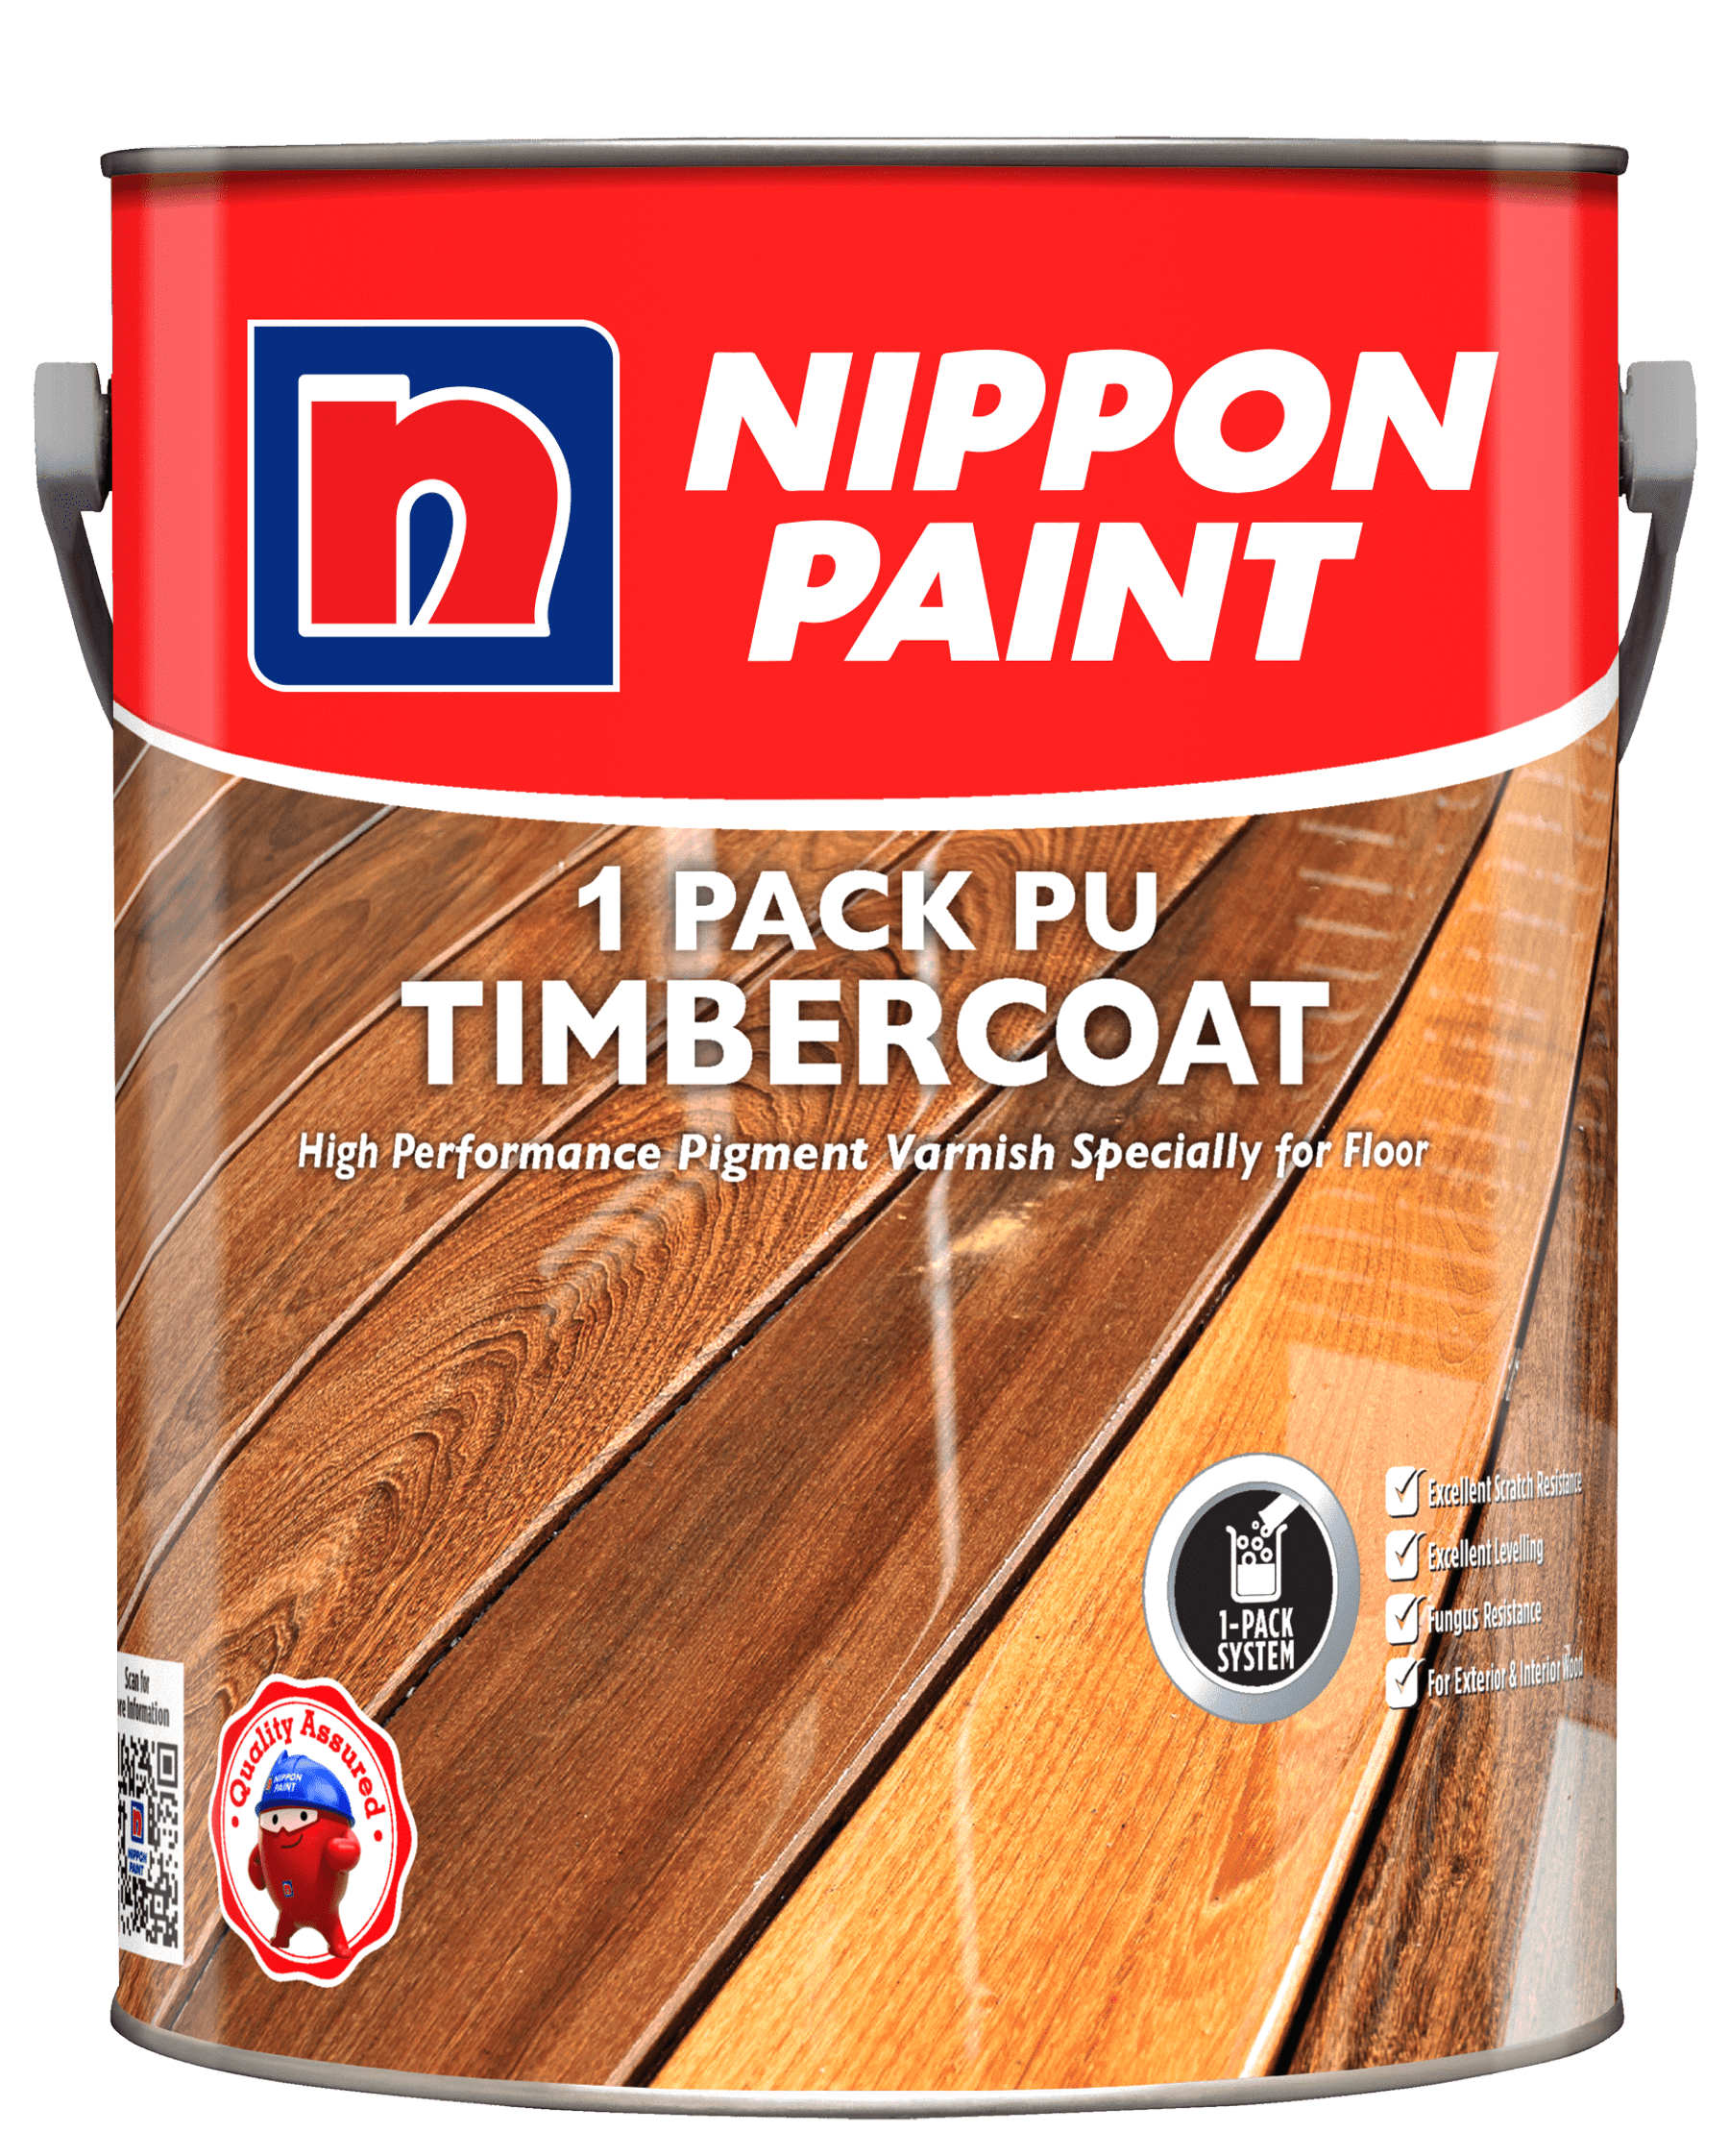 1 Pack PU Timbercoat